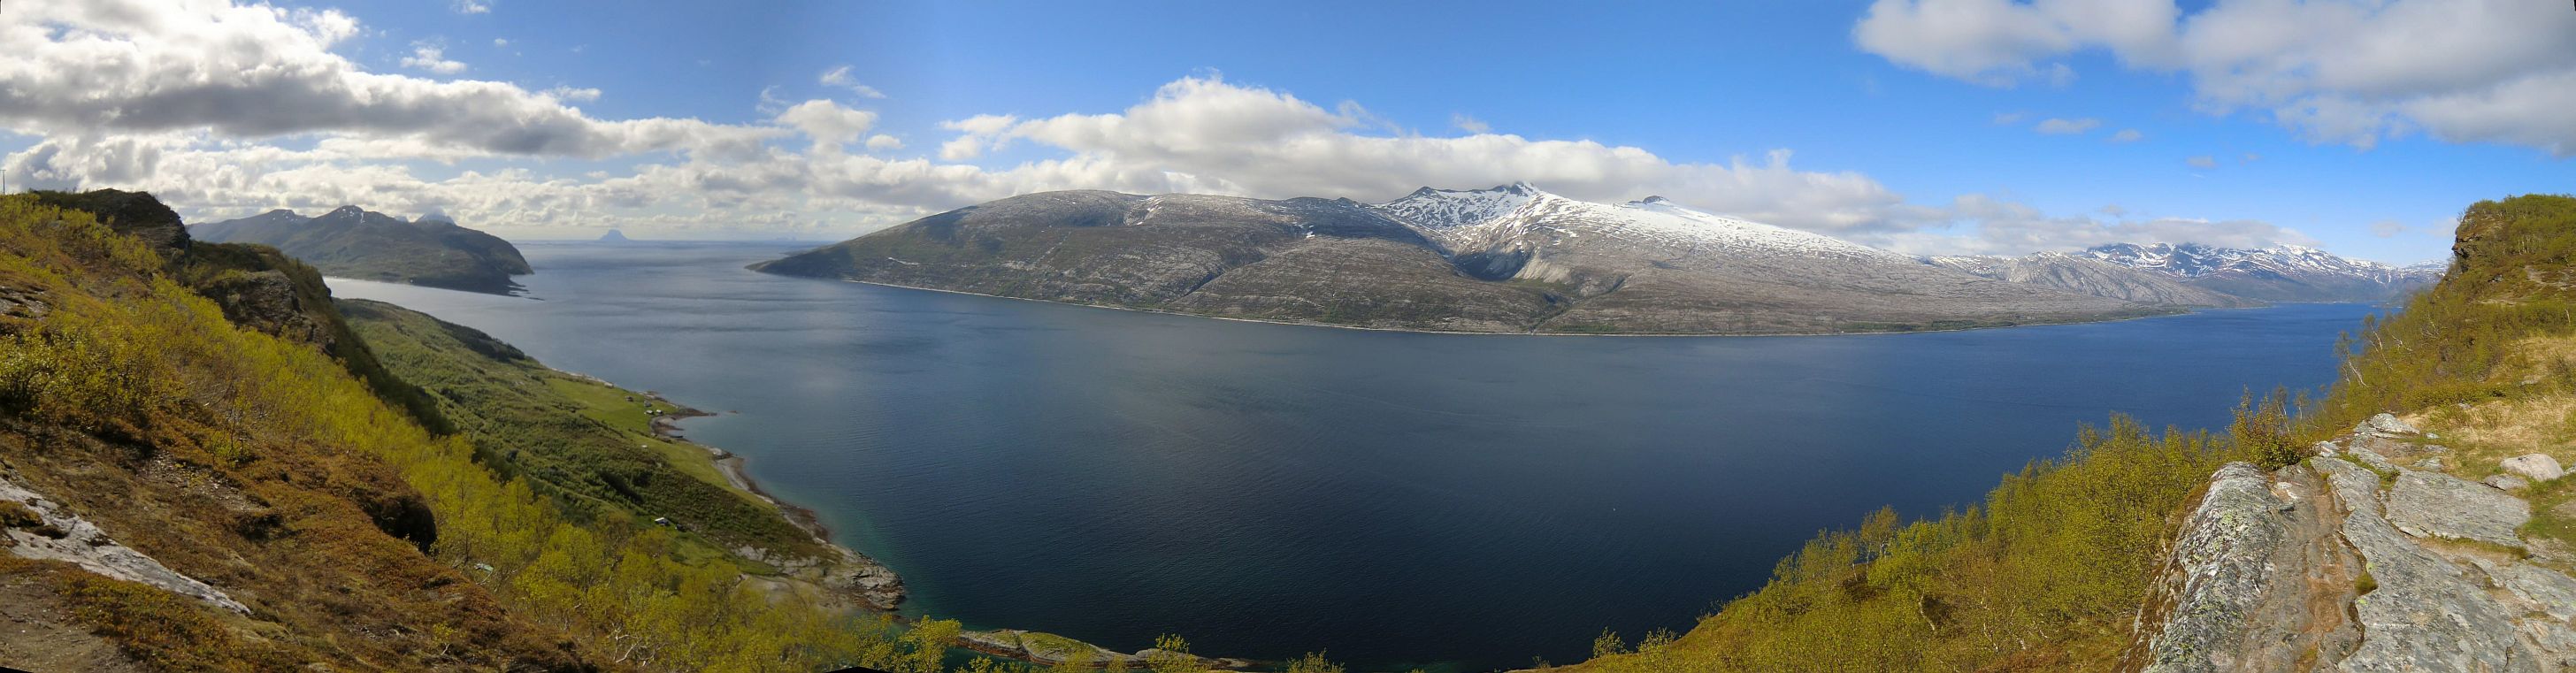 Panoramabild - Srfjord, Handnes, Lovund und Pollatinden